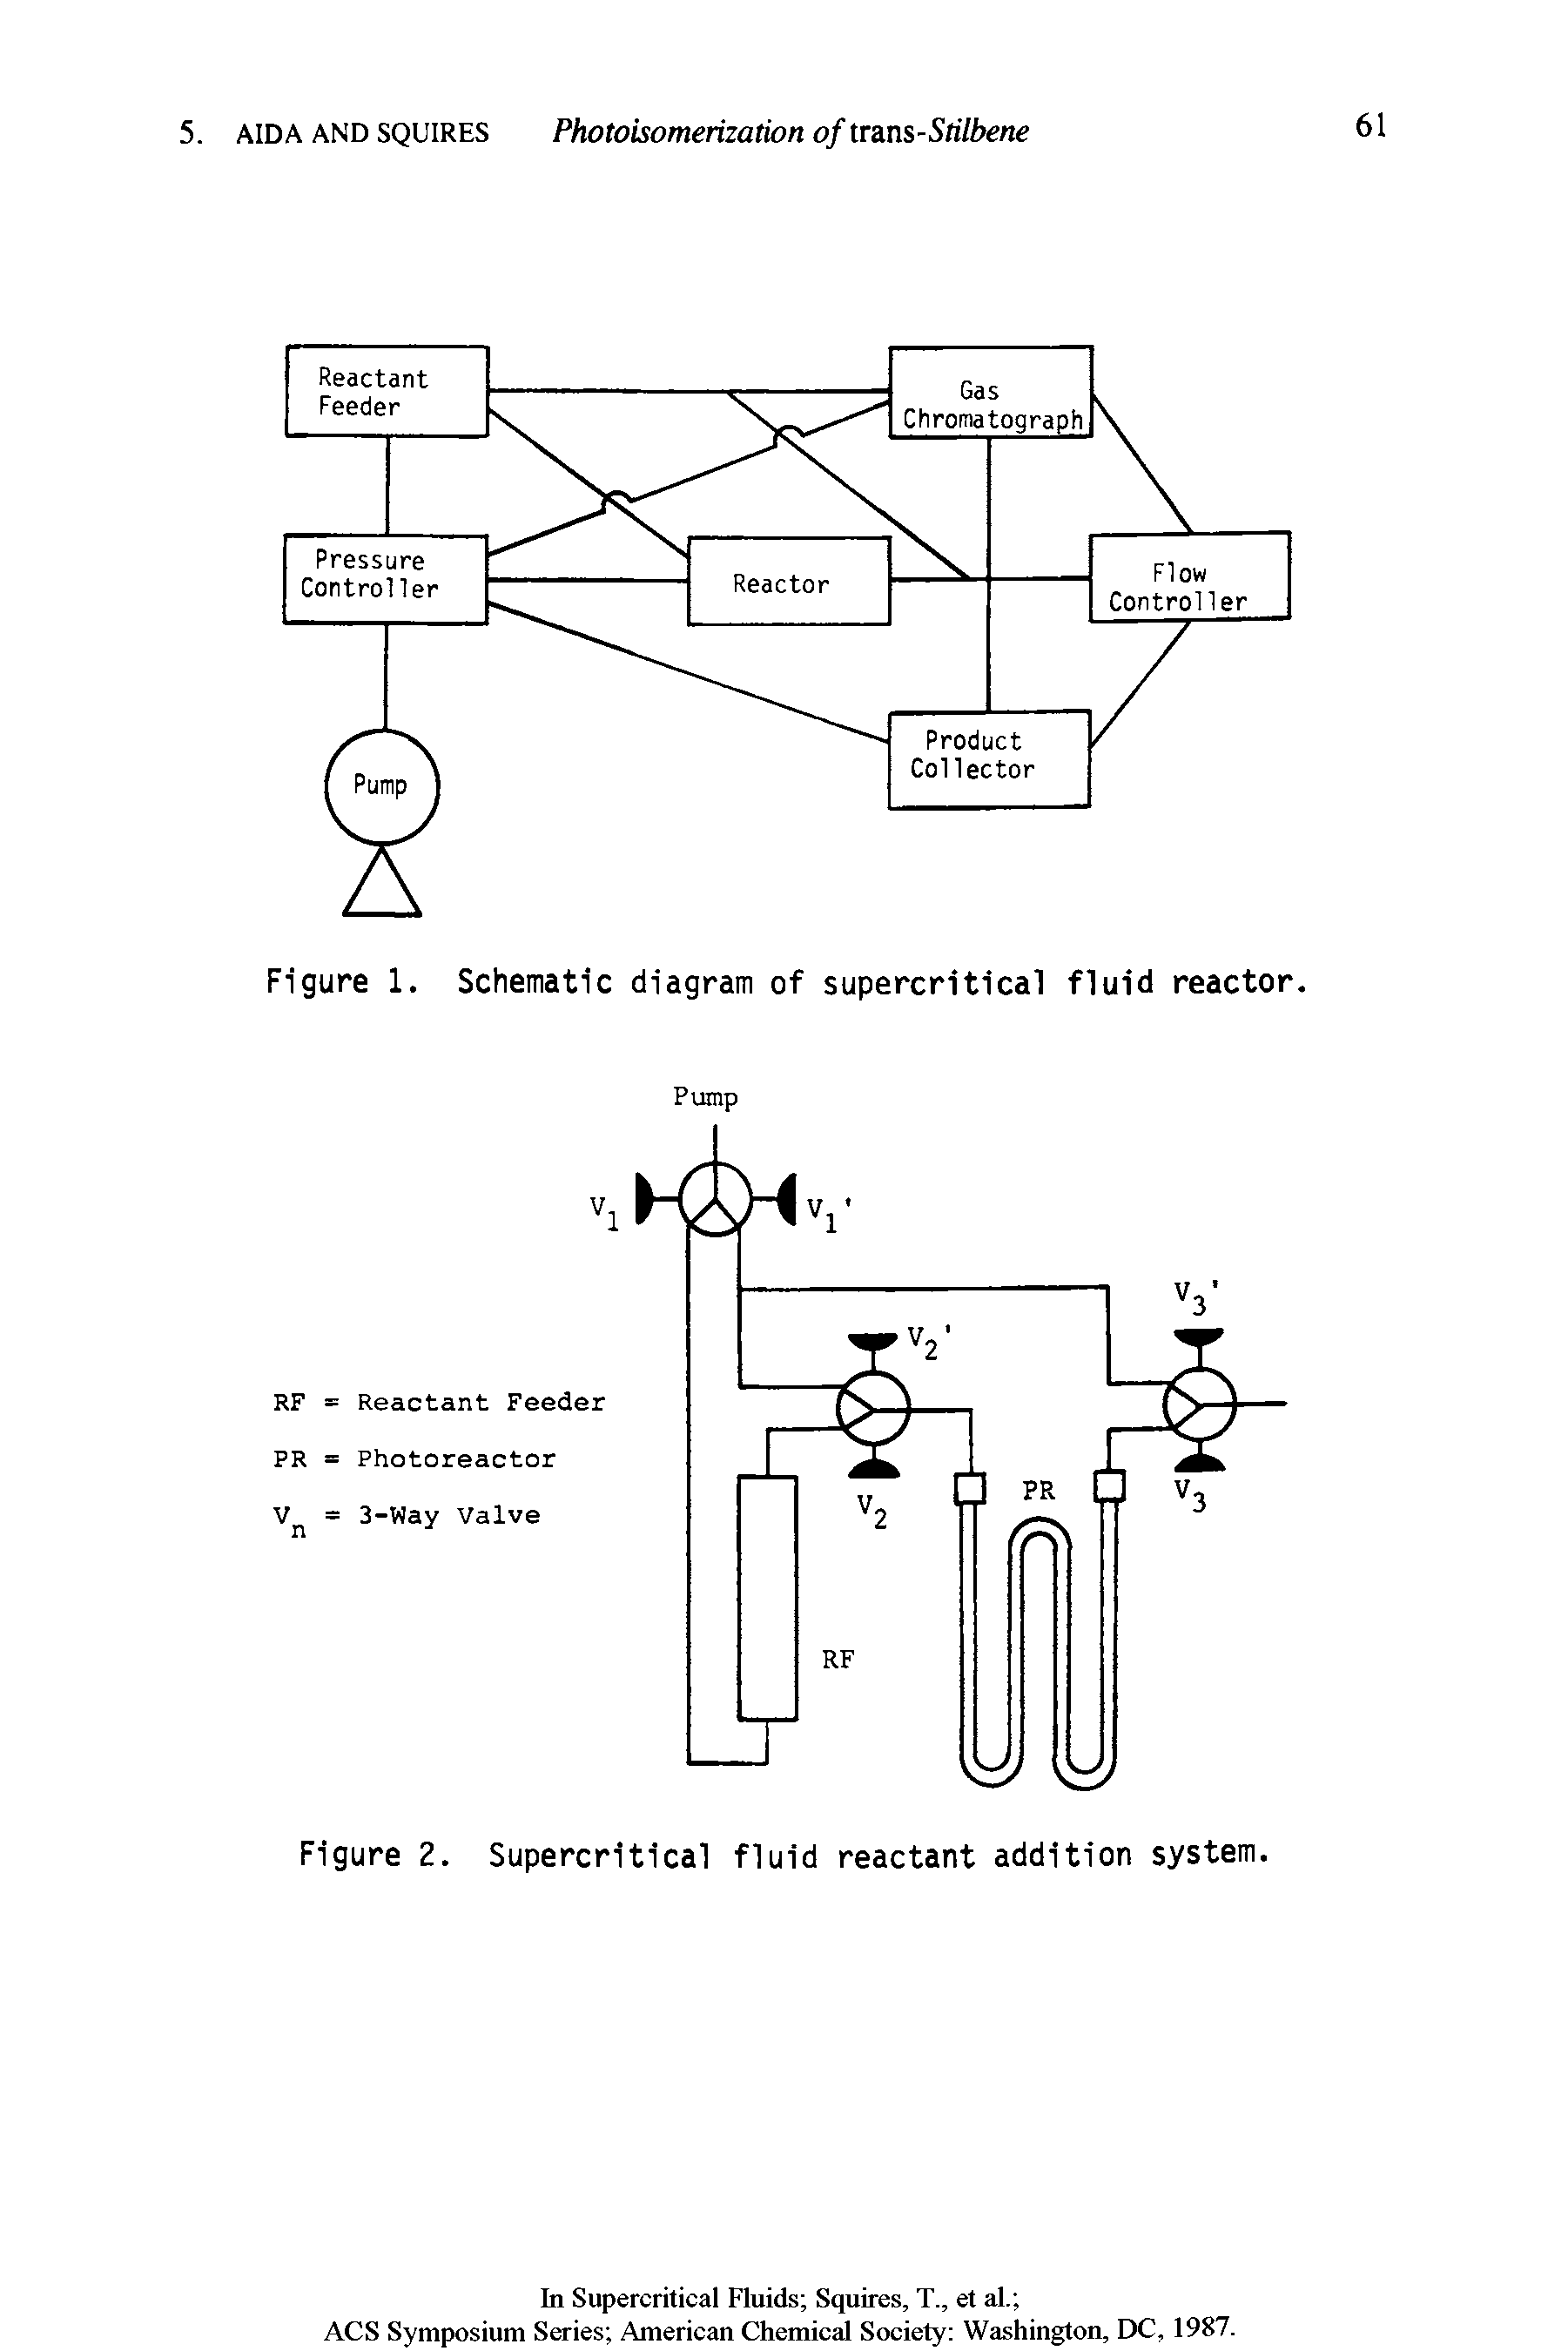 Figure 2. Supercritical fluid reactant addition system.